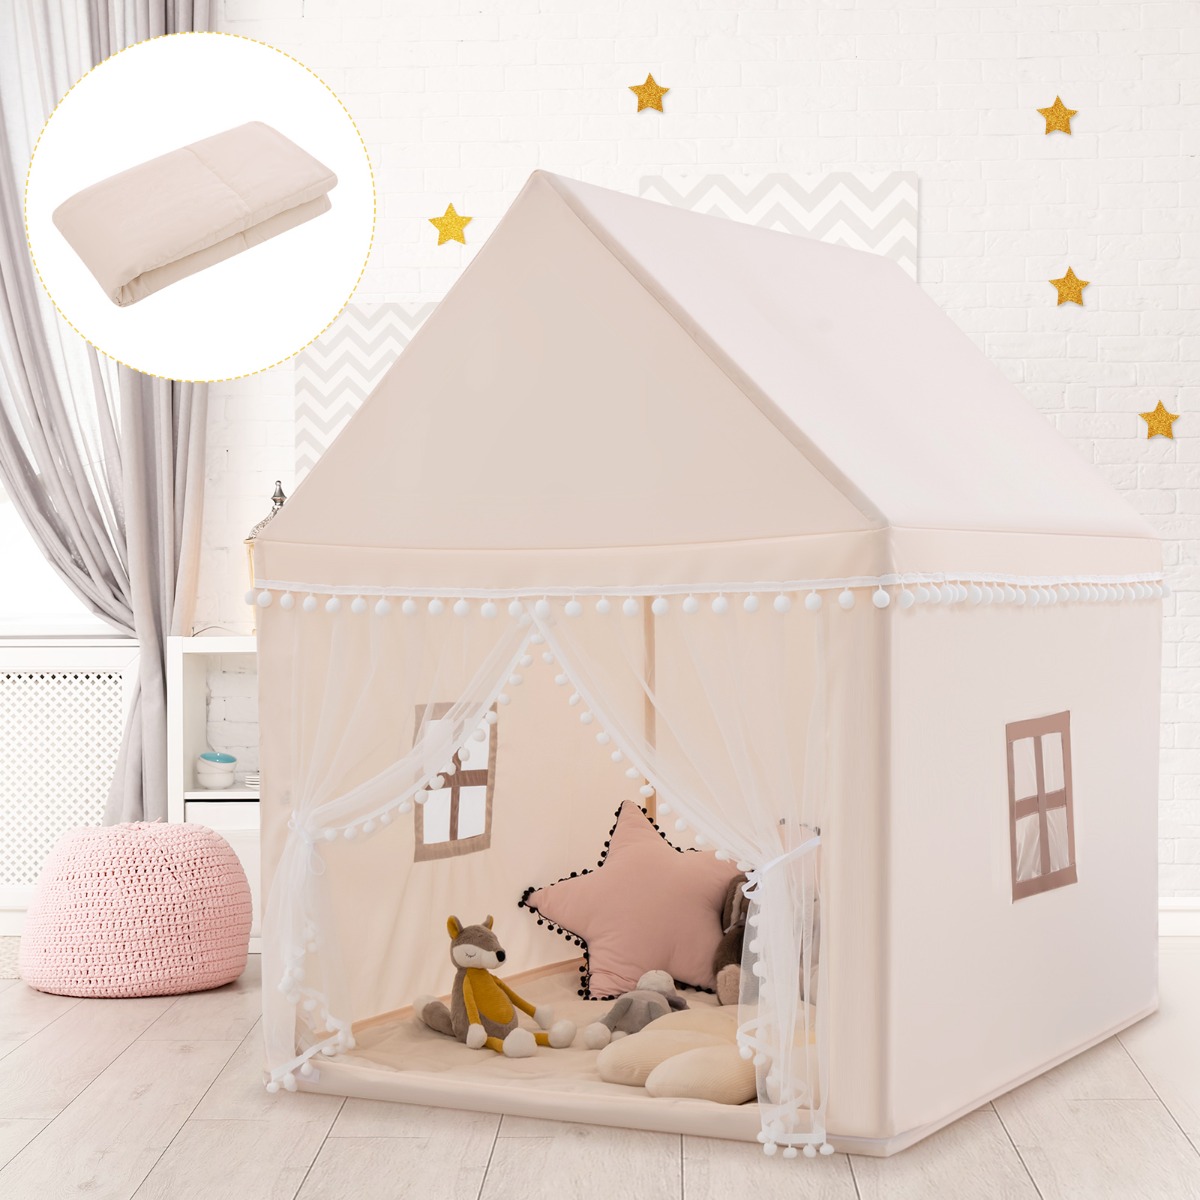 Costway Casetta giocattolo per bambini, Casa grande e resistente con solida struttura di legno Beige